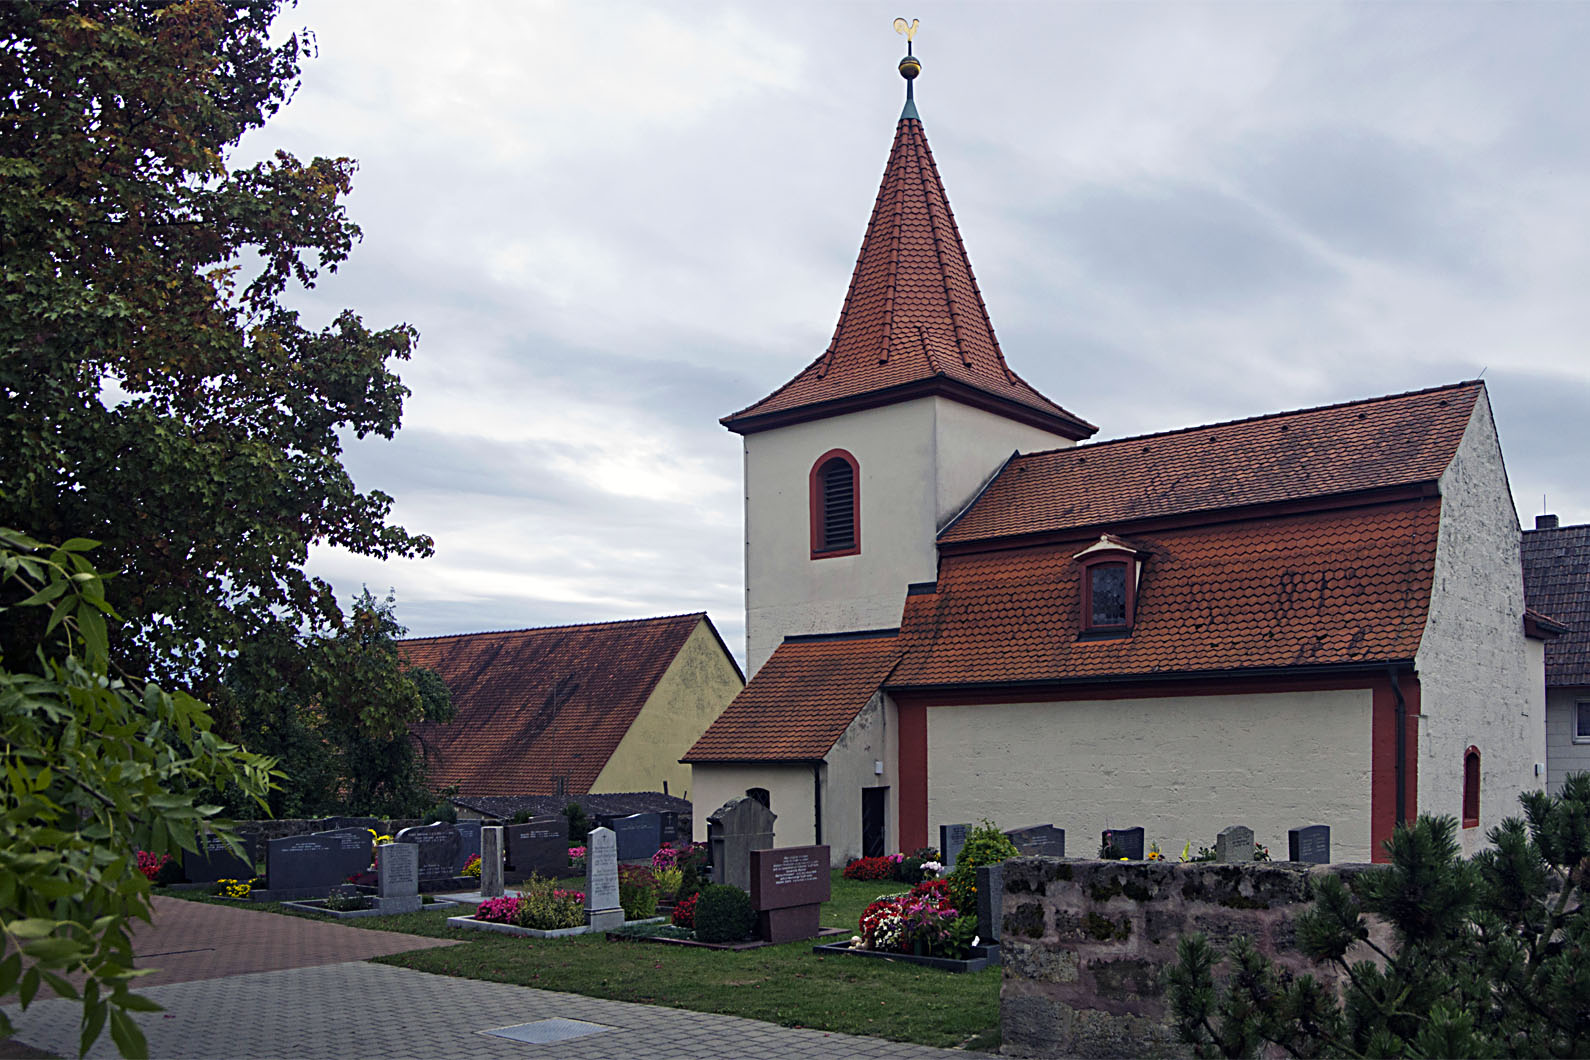 Kottensdorf Wehrkirche